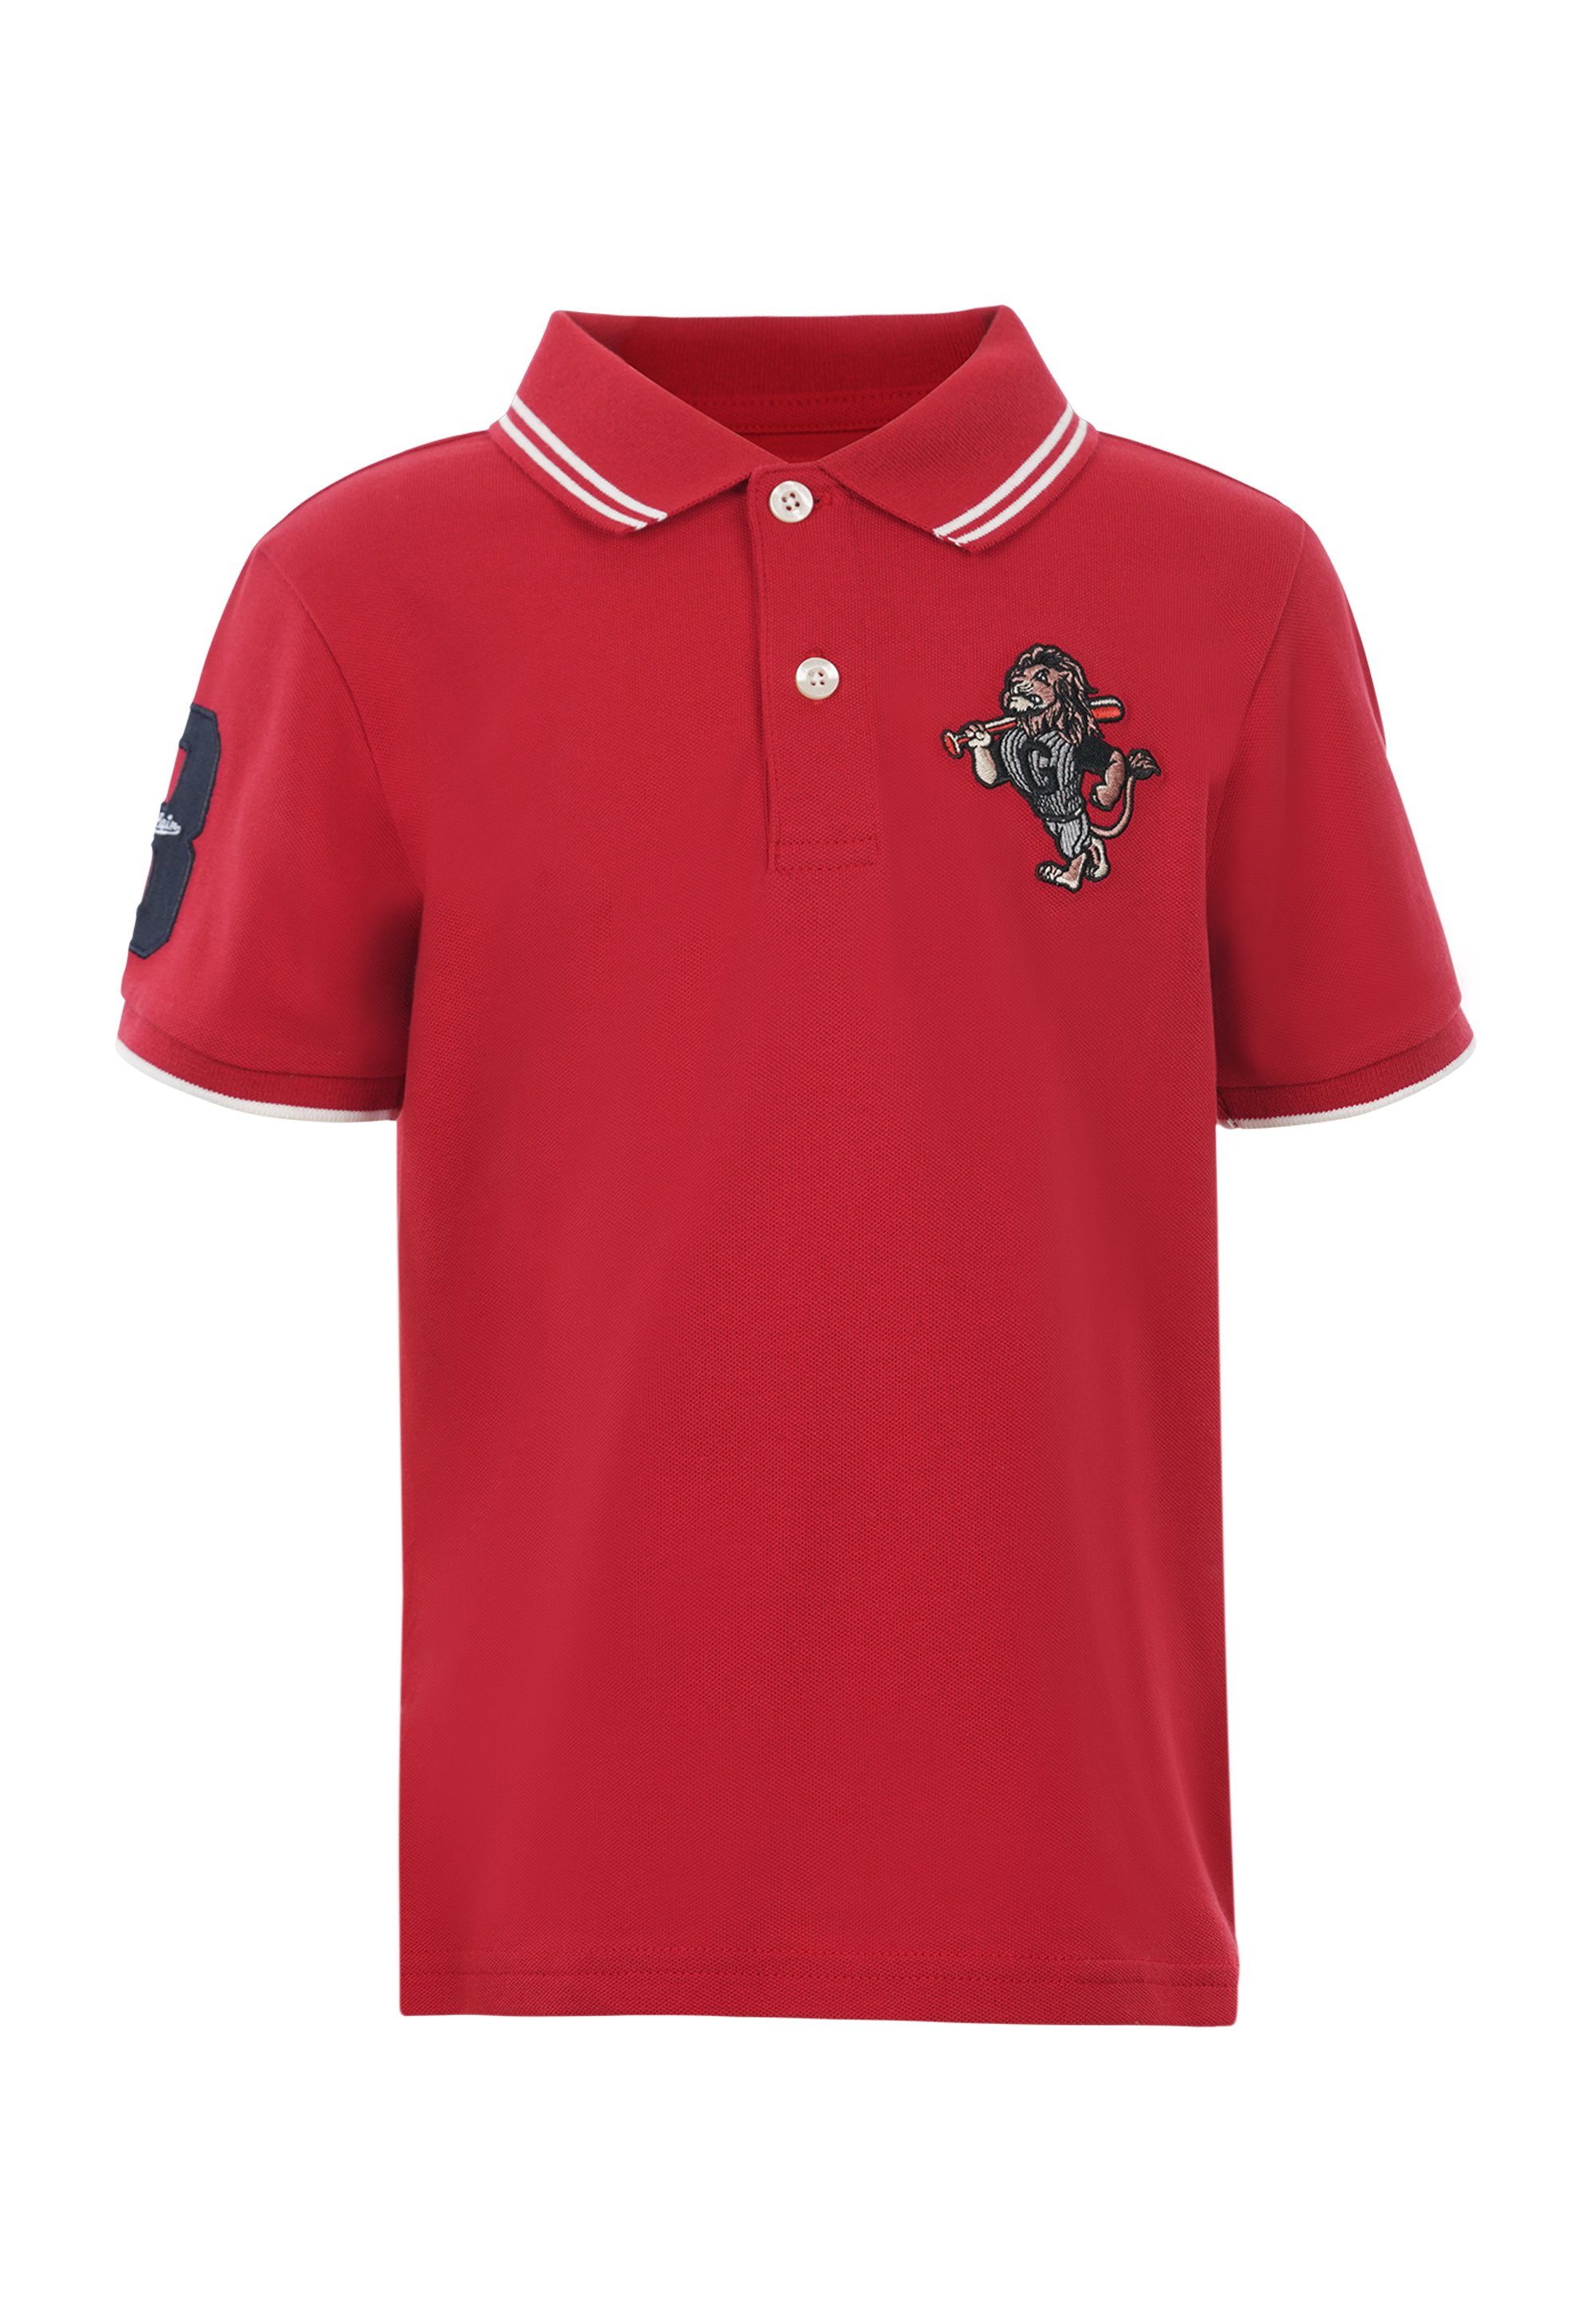 GIORDANO junior Poloshirt Retro Comic Style mit toller Löwen-Stickerei rot | Poloshirts